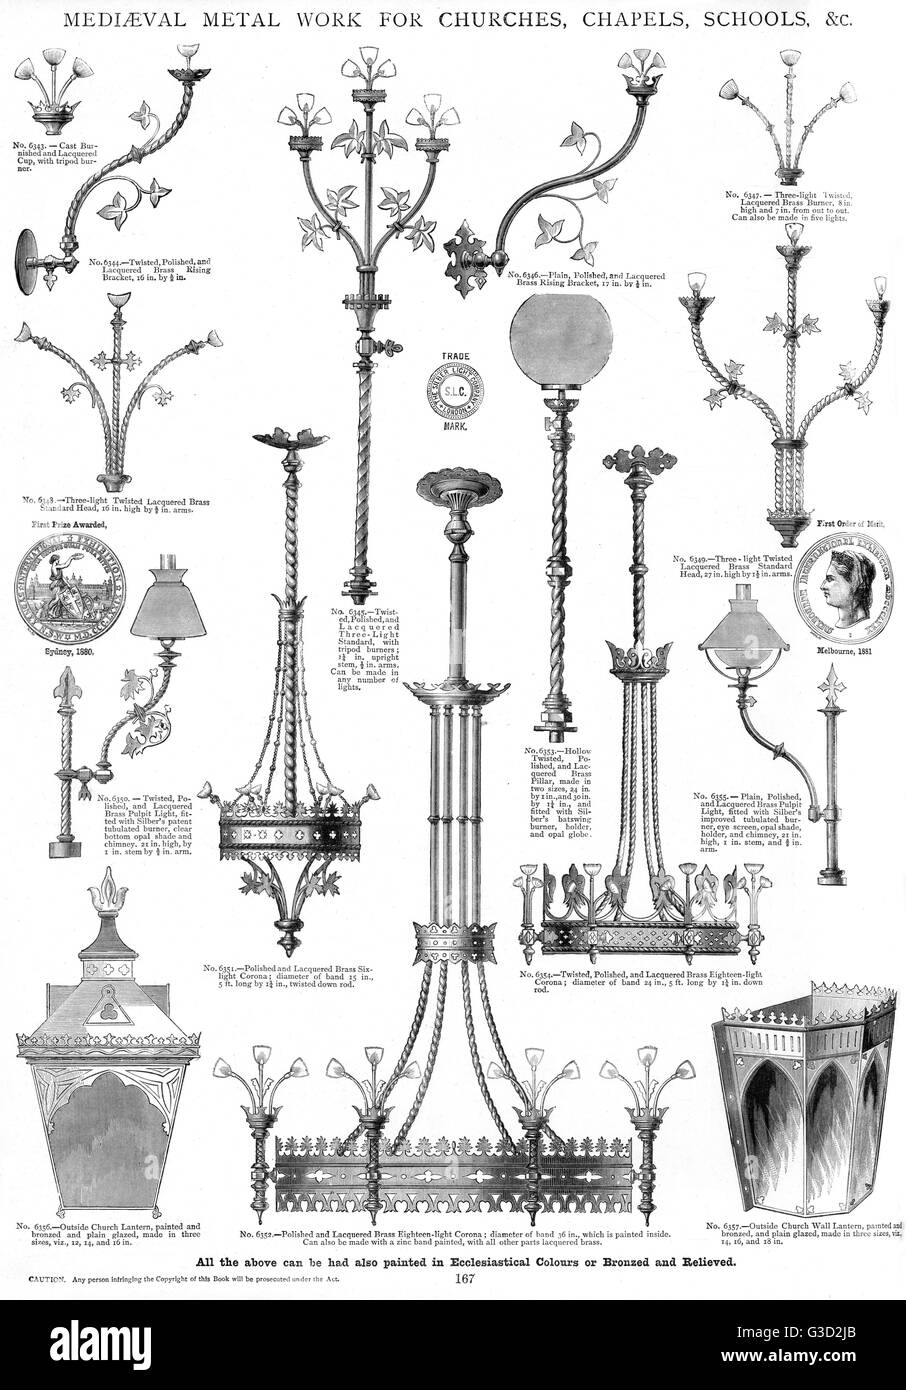 Mittelalterliche Metallarbeiten für Kirchen, Kapellen, Schulen, Platte 167 Stockfoto